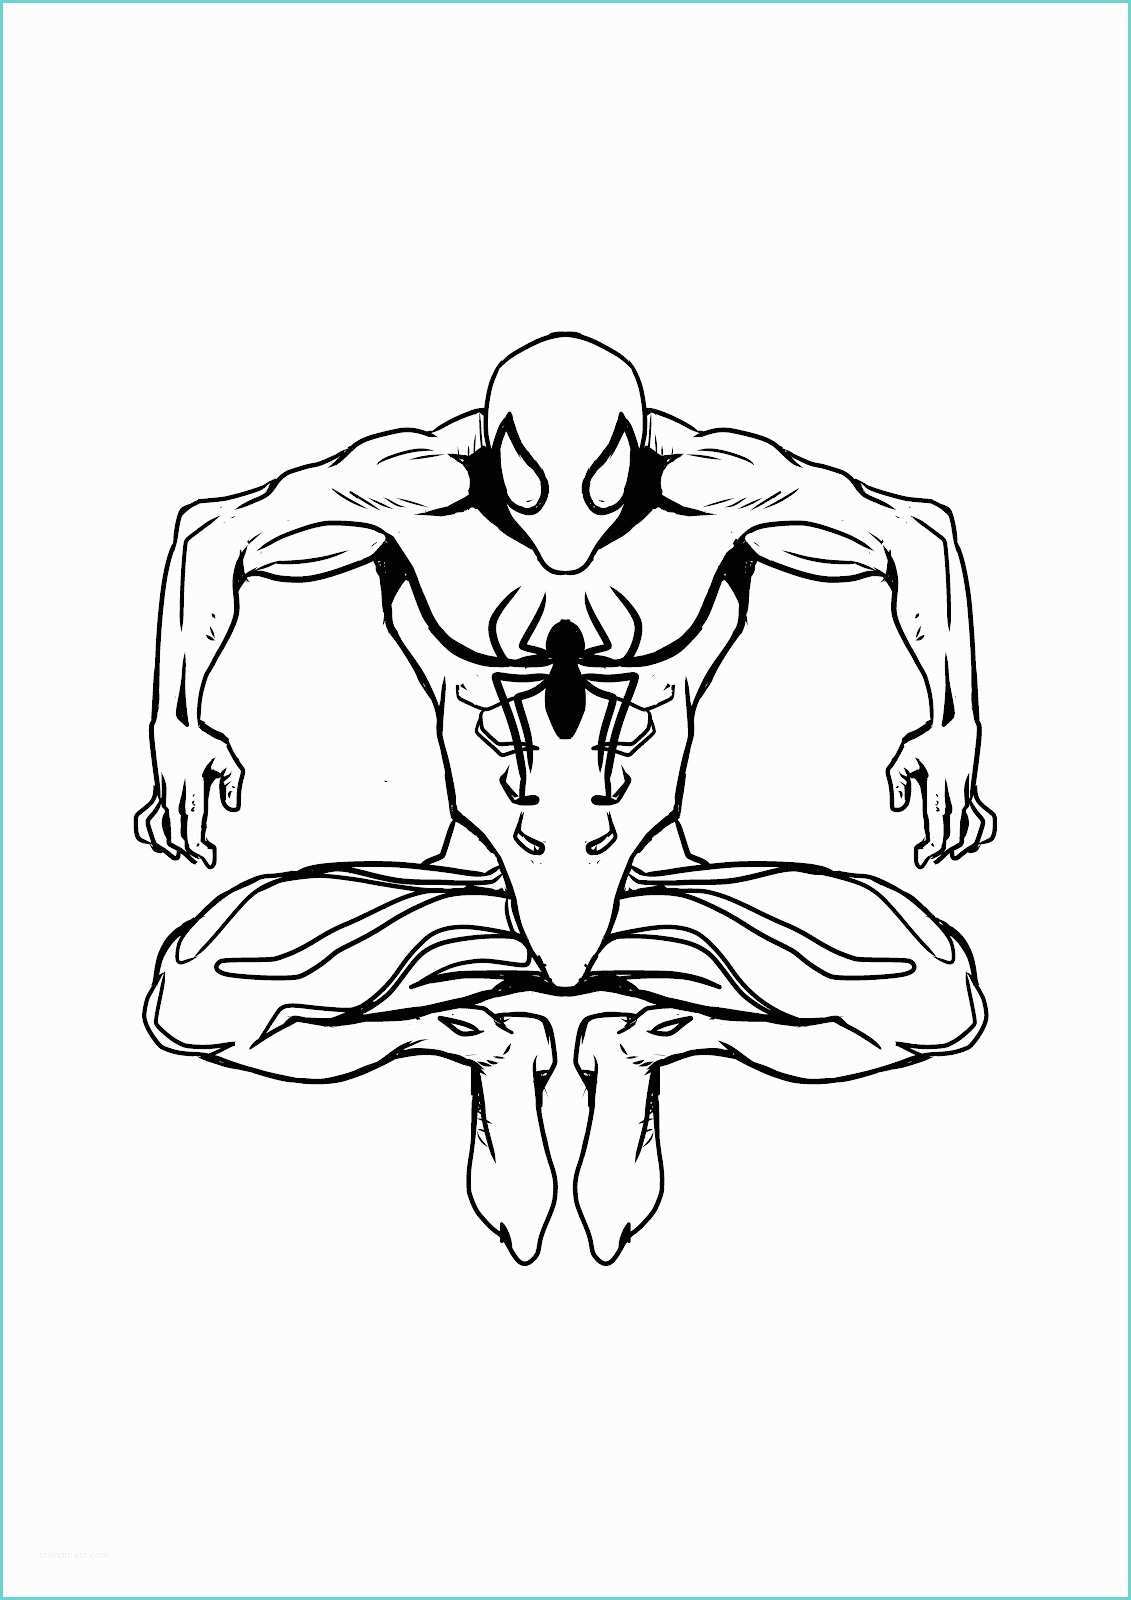 Immagini Di Spiderman Da Colorare Disegno Di Spiderman Da Colorare Online Disegni Da